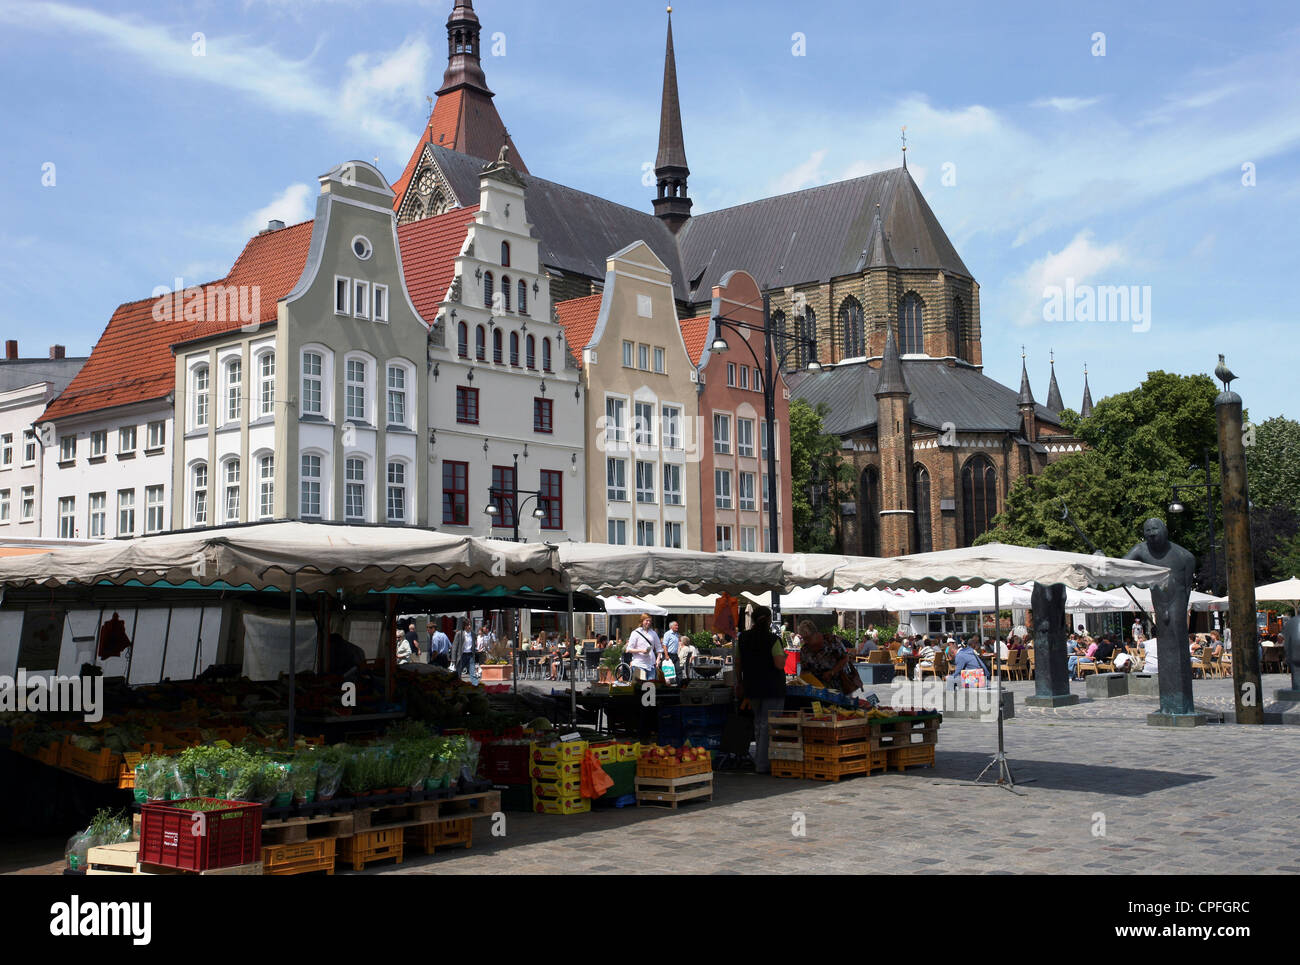 La jolie place du marché, à Rostock, Allemagne Banque D'Images